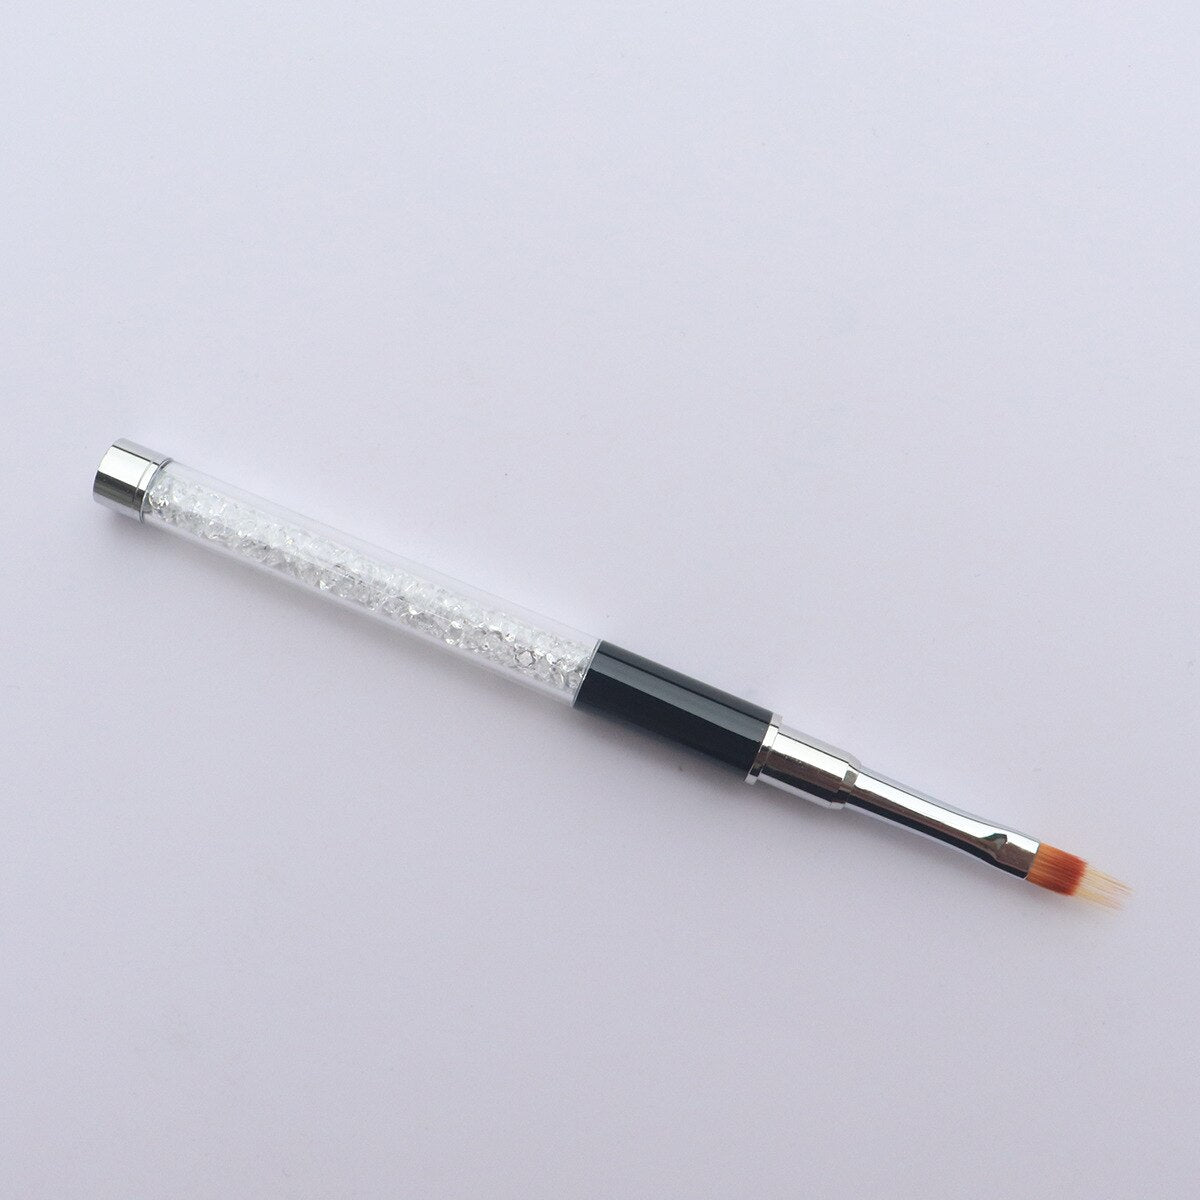 1pc Ombre brosse à ongles Nail Art peinture stylo brosse UV Gel vernis dégradé couleur strass cristal acrylique ongles dessin stylo